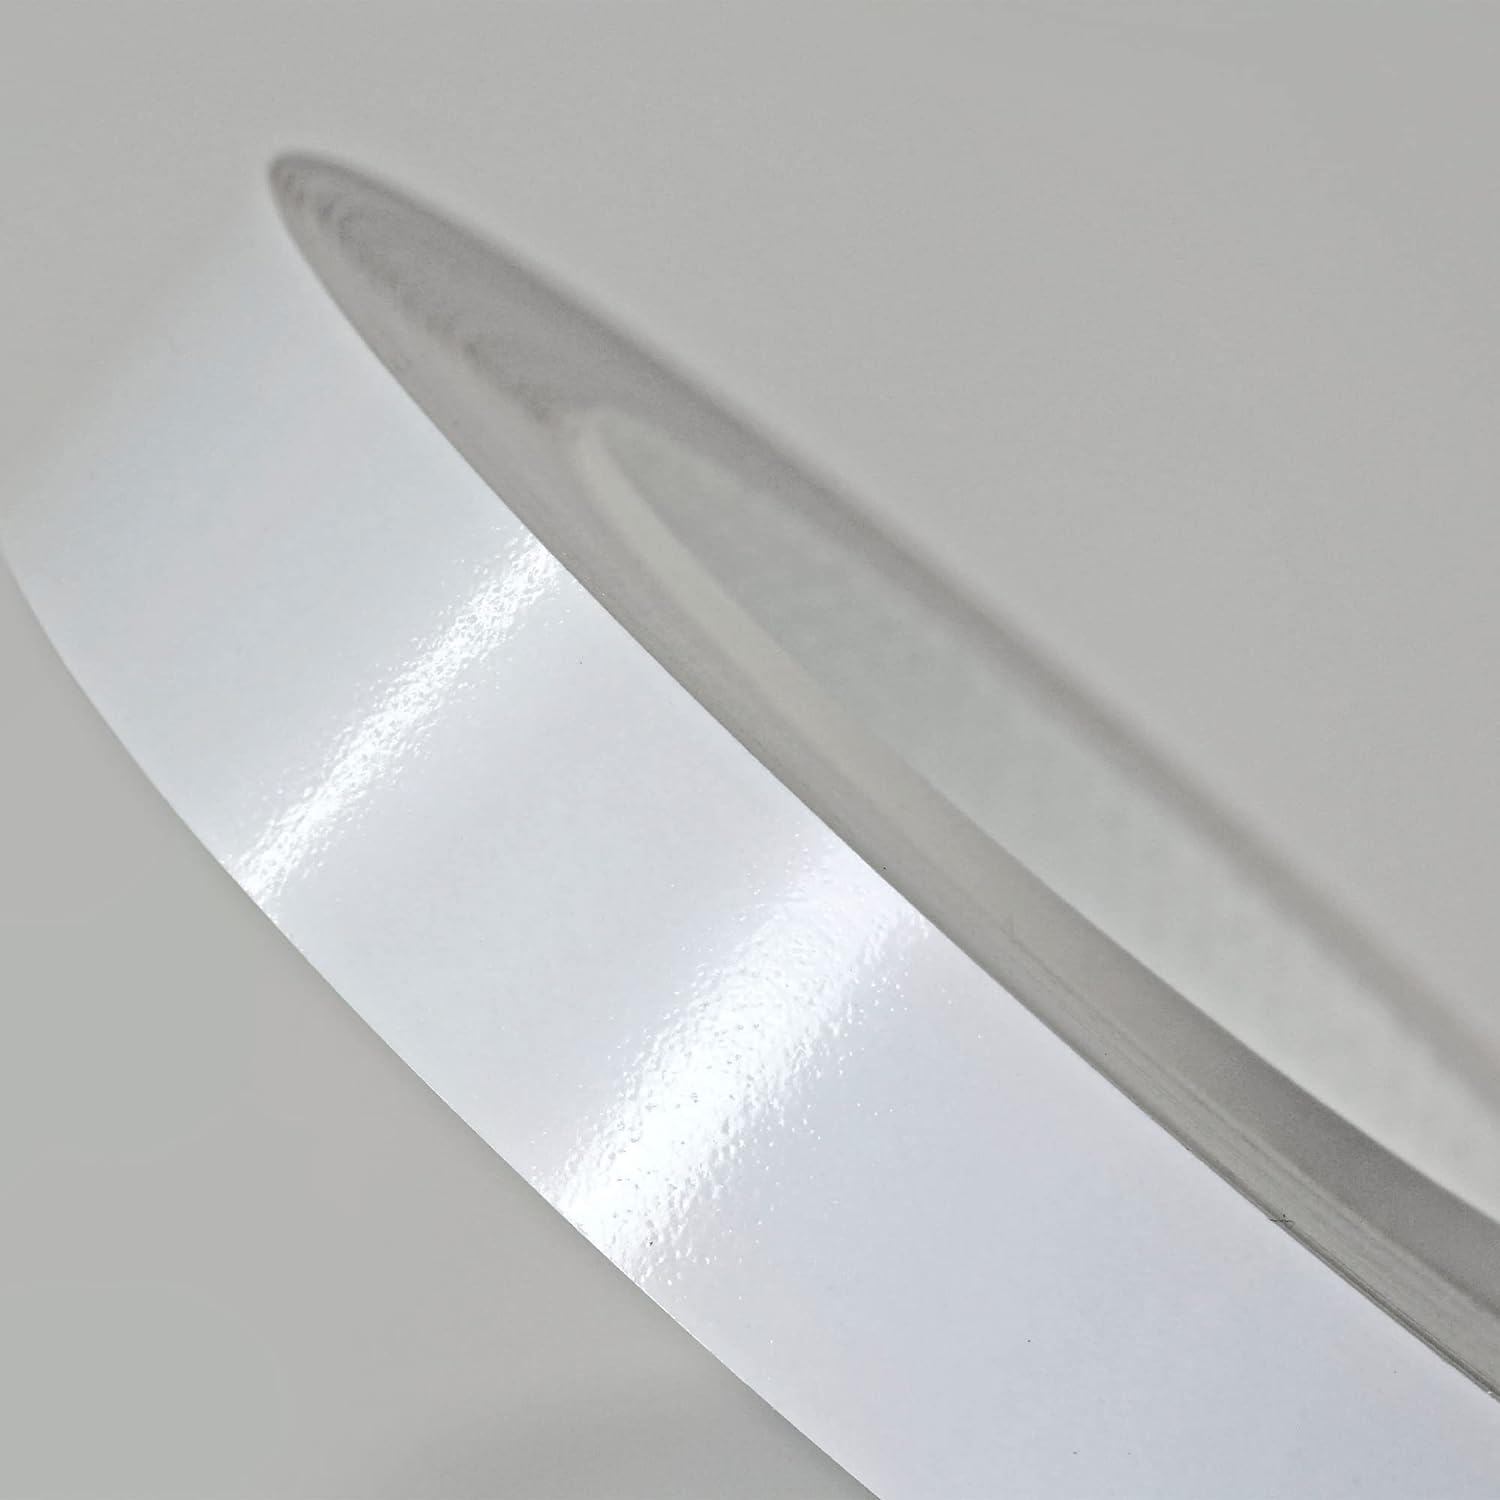 Roll of Pre-Glued Melamine Edgebanding Tape - Iron on Edgebanding (White High Gloss)